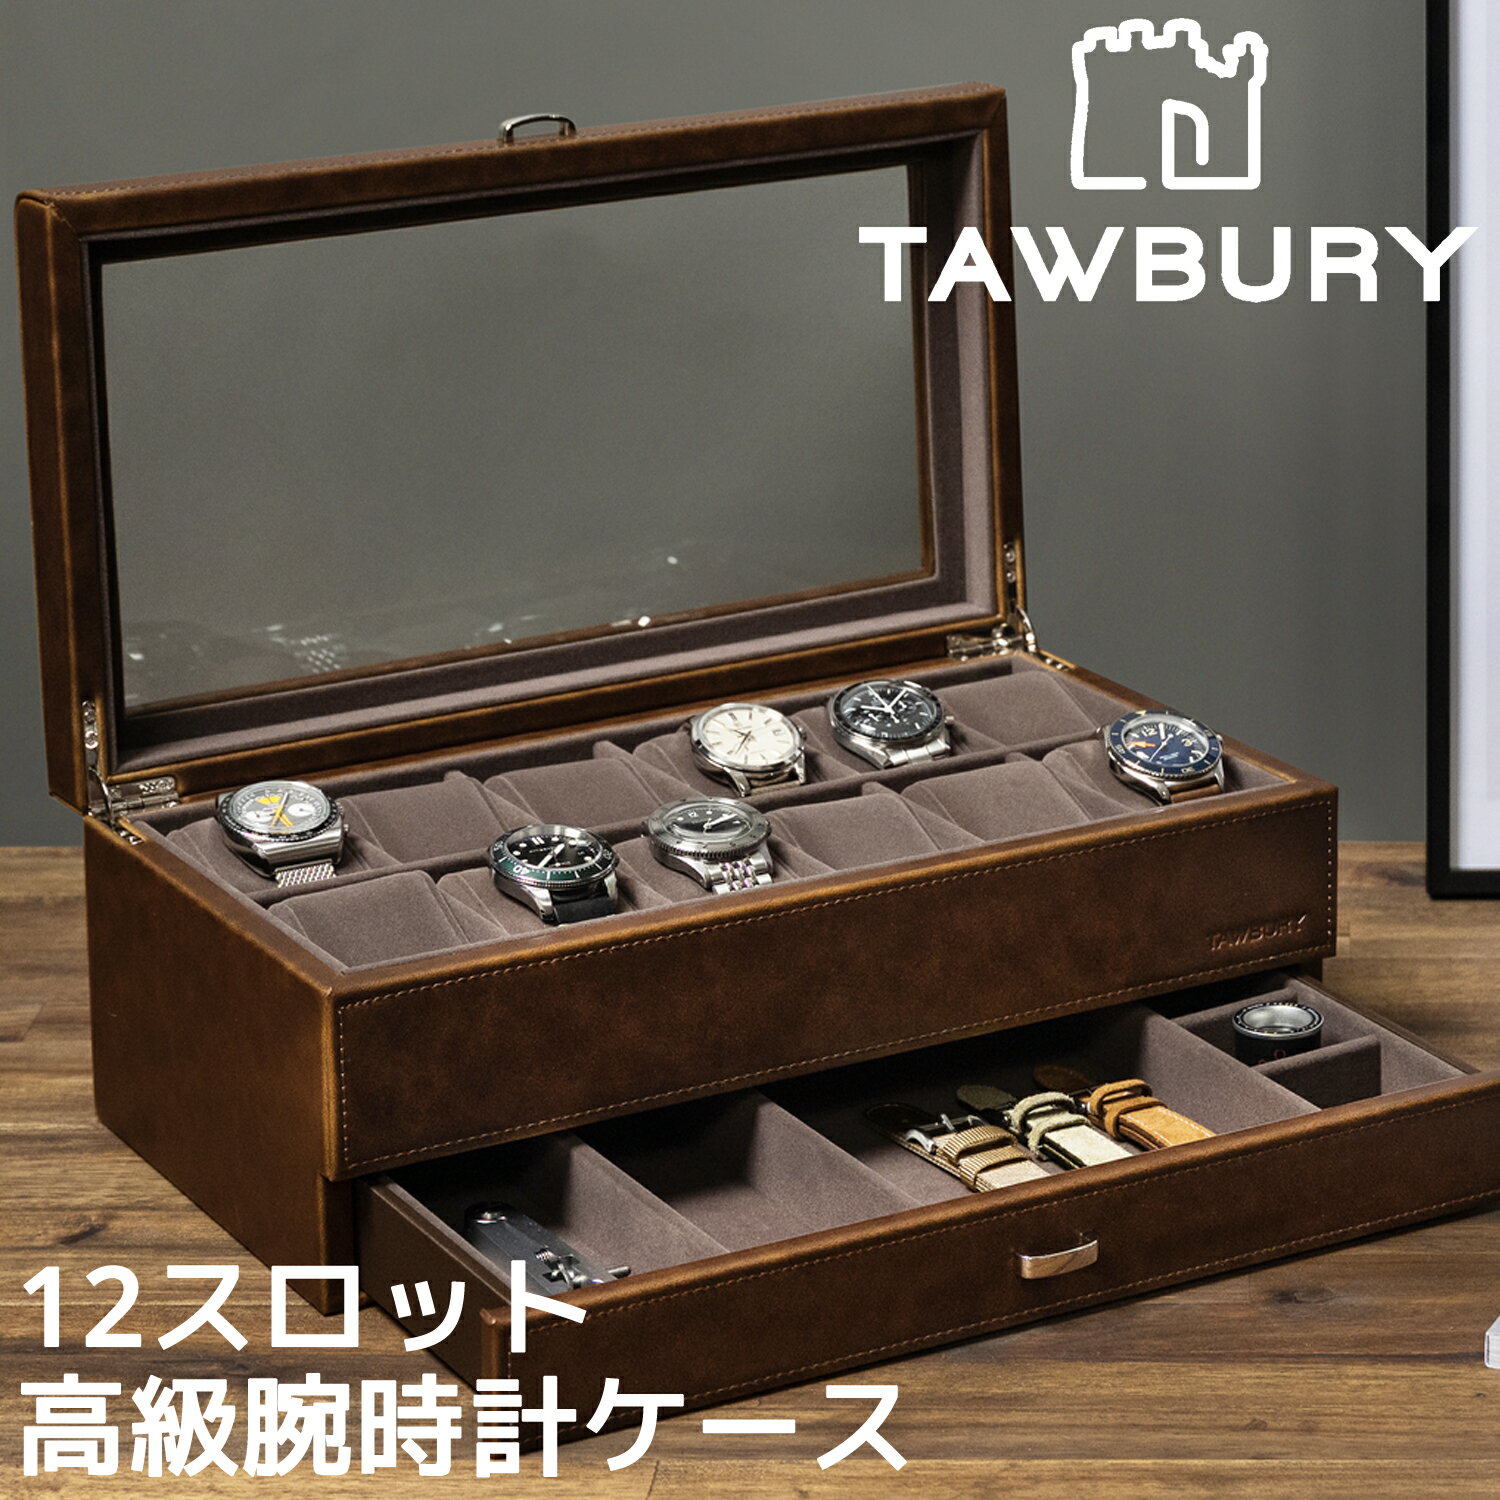 Tawbury 高級 腕時計収納ケース 12本 アクセサリー 収納 本革 ウォッチボックス ケース 革 レザー 黒 茶 ブラック ブラウン 時計 ウォッチ 収納 保管 インテリア ディスプレイ 展示 ボックス …